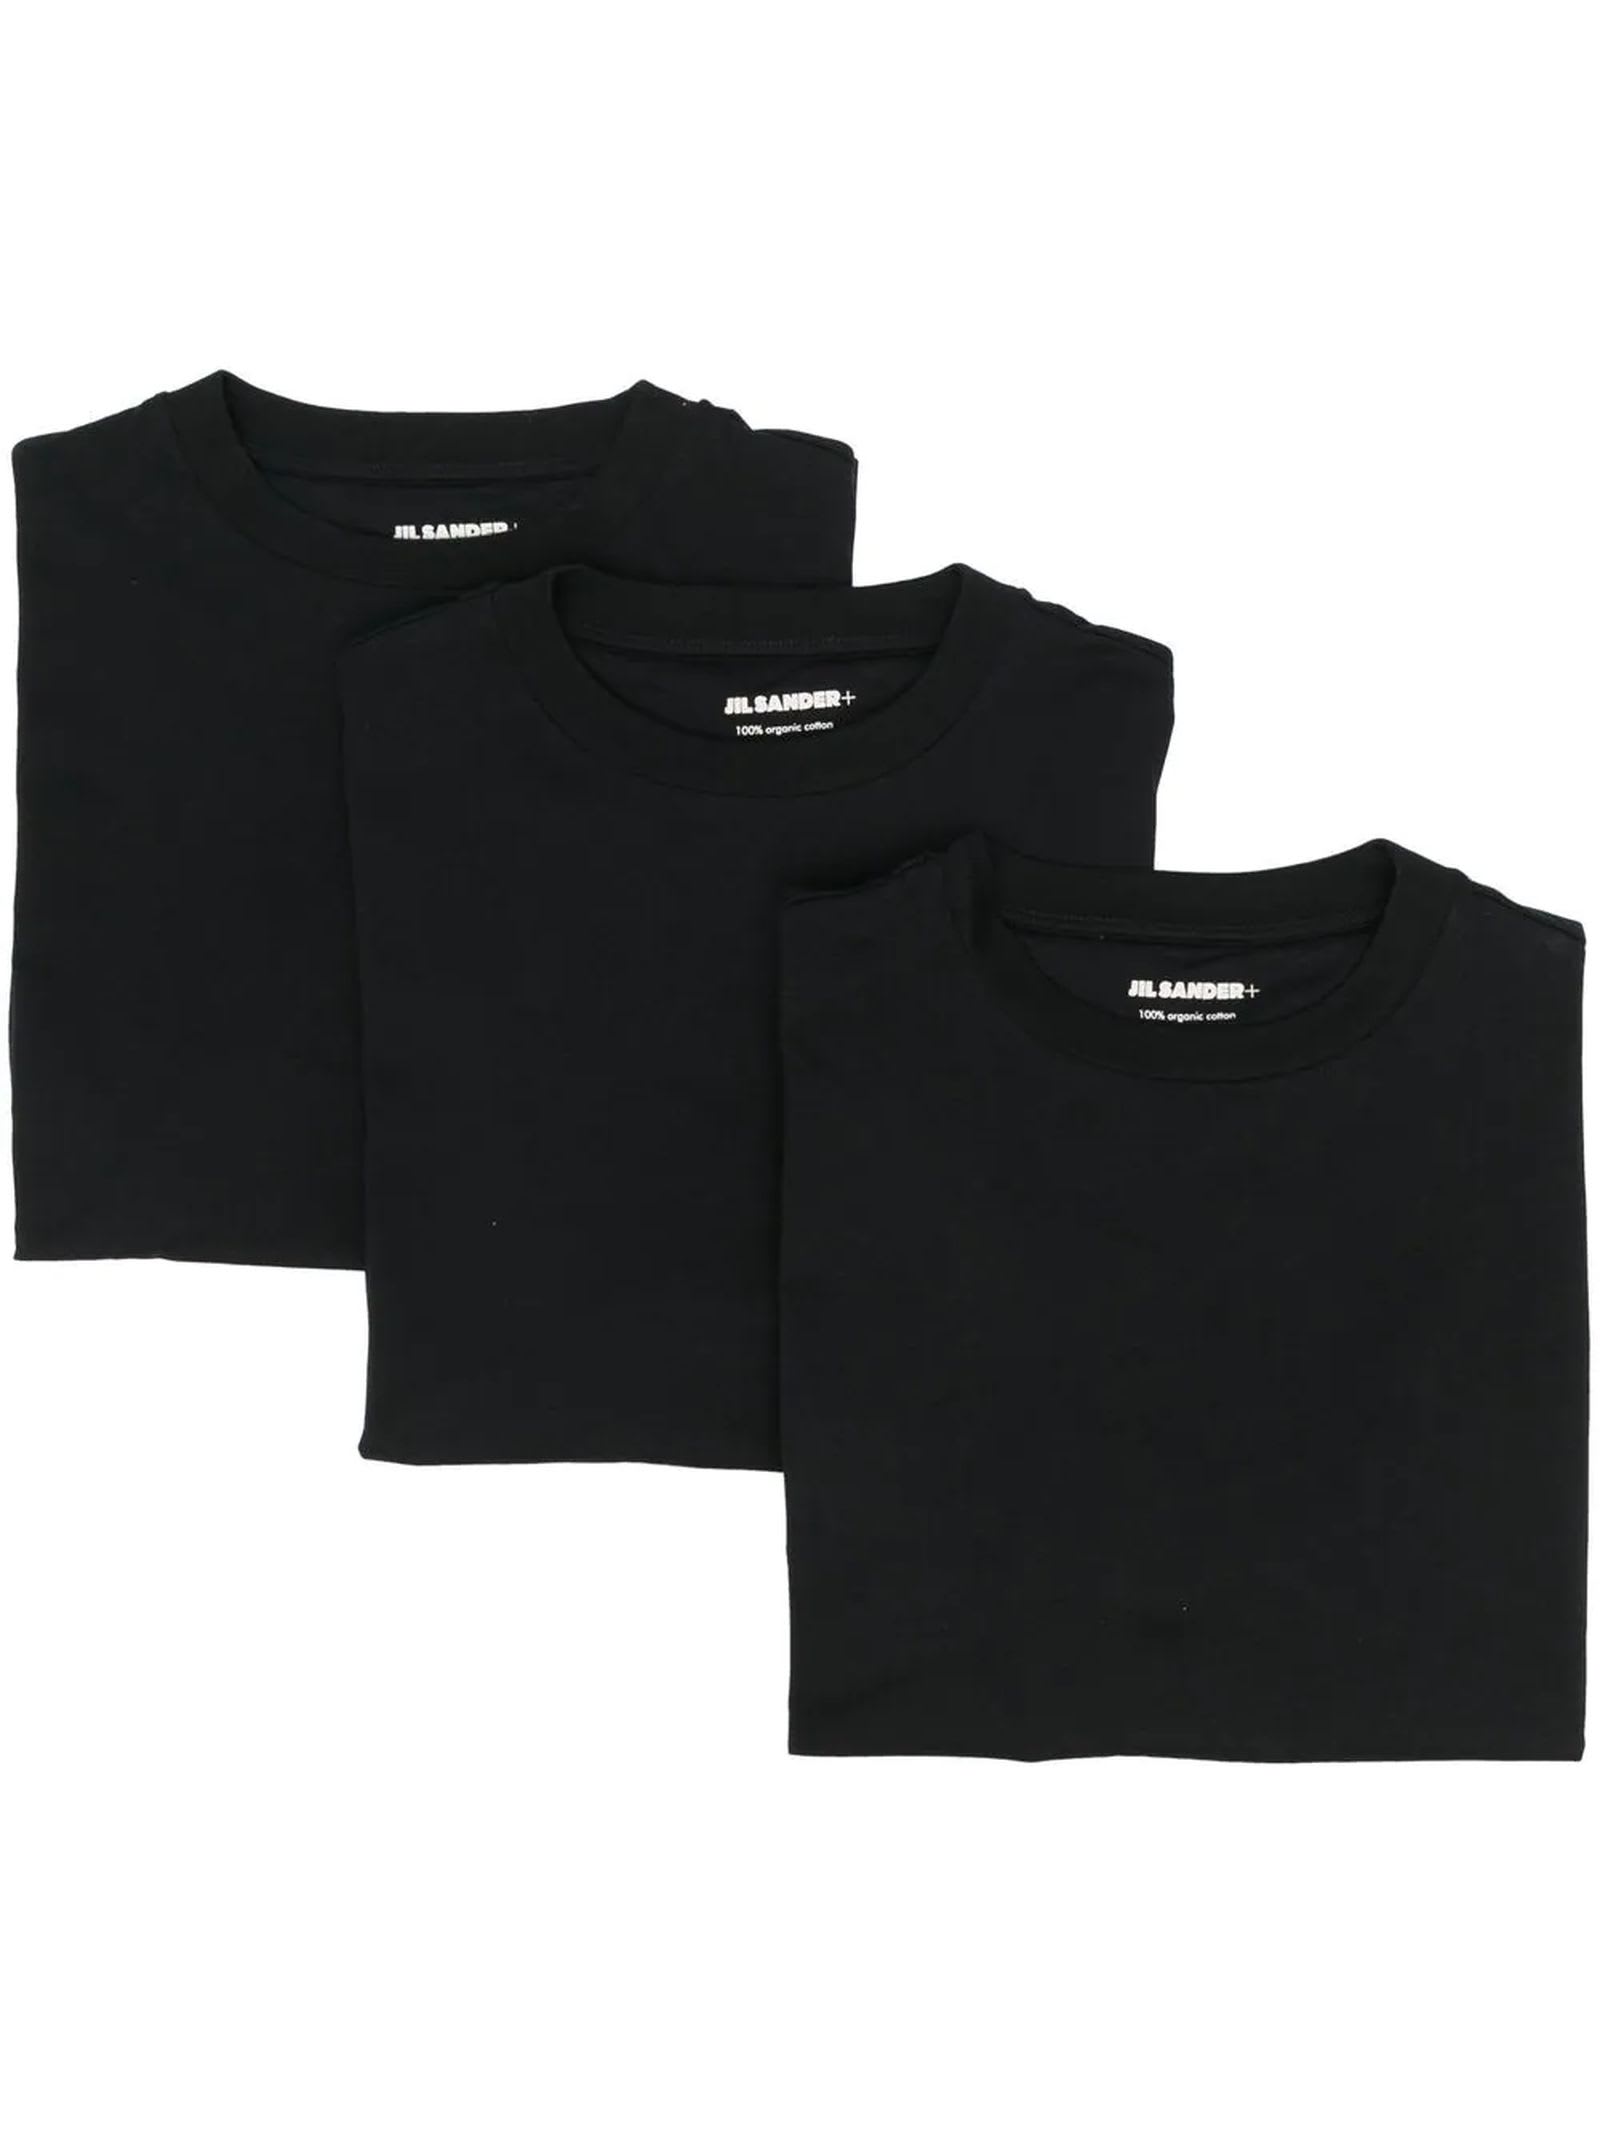 Jil Sander Black Organic Cotton 3-pack T-shirts